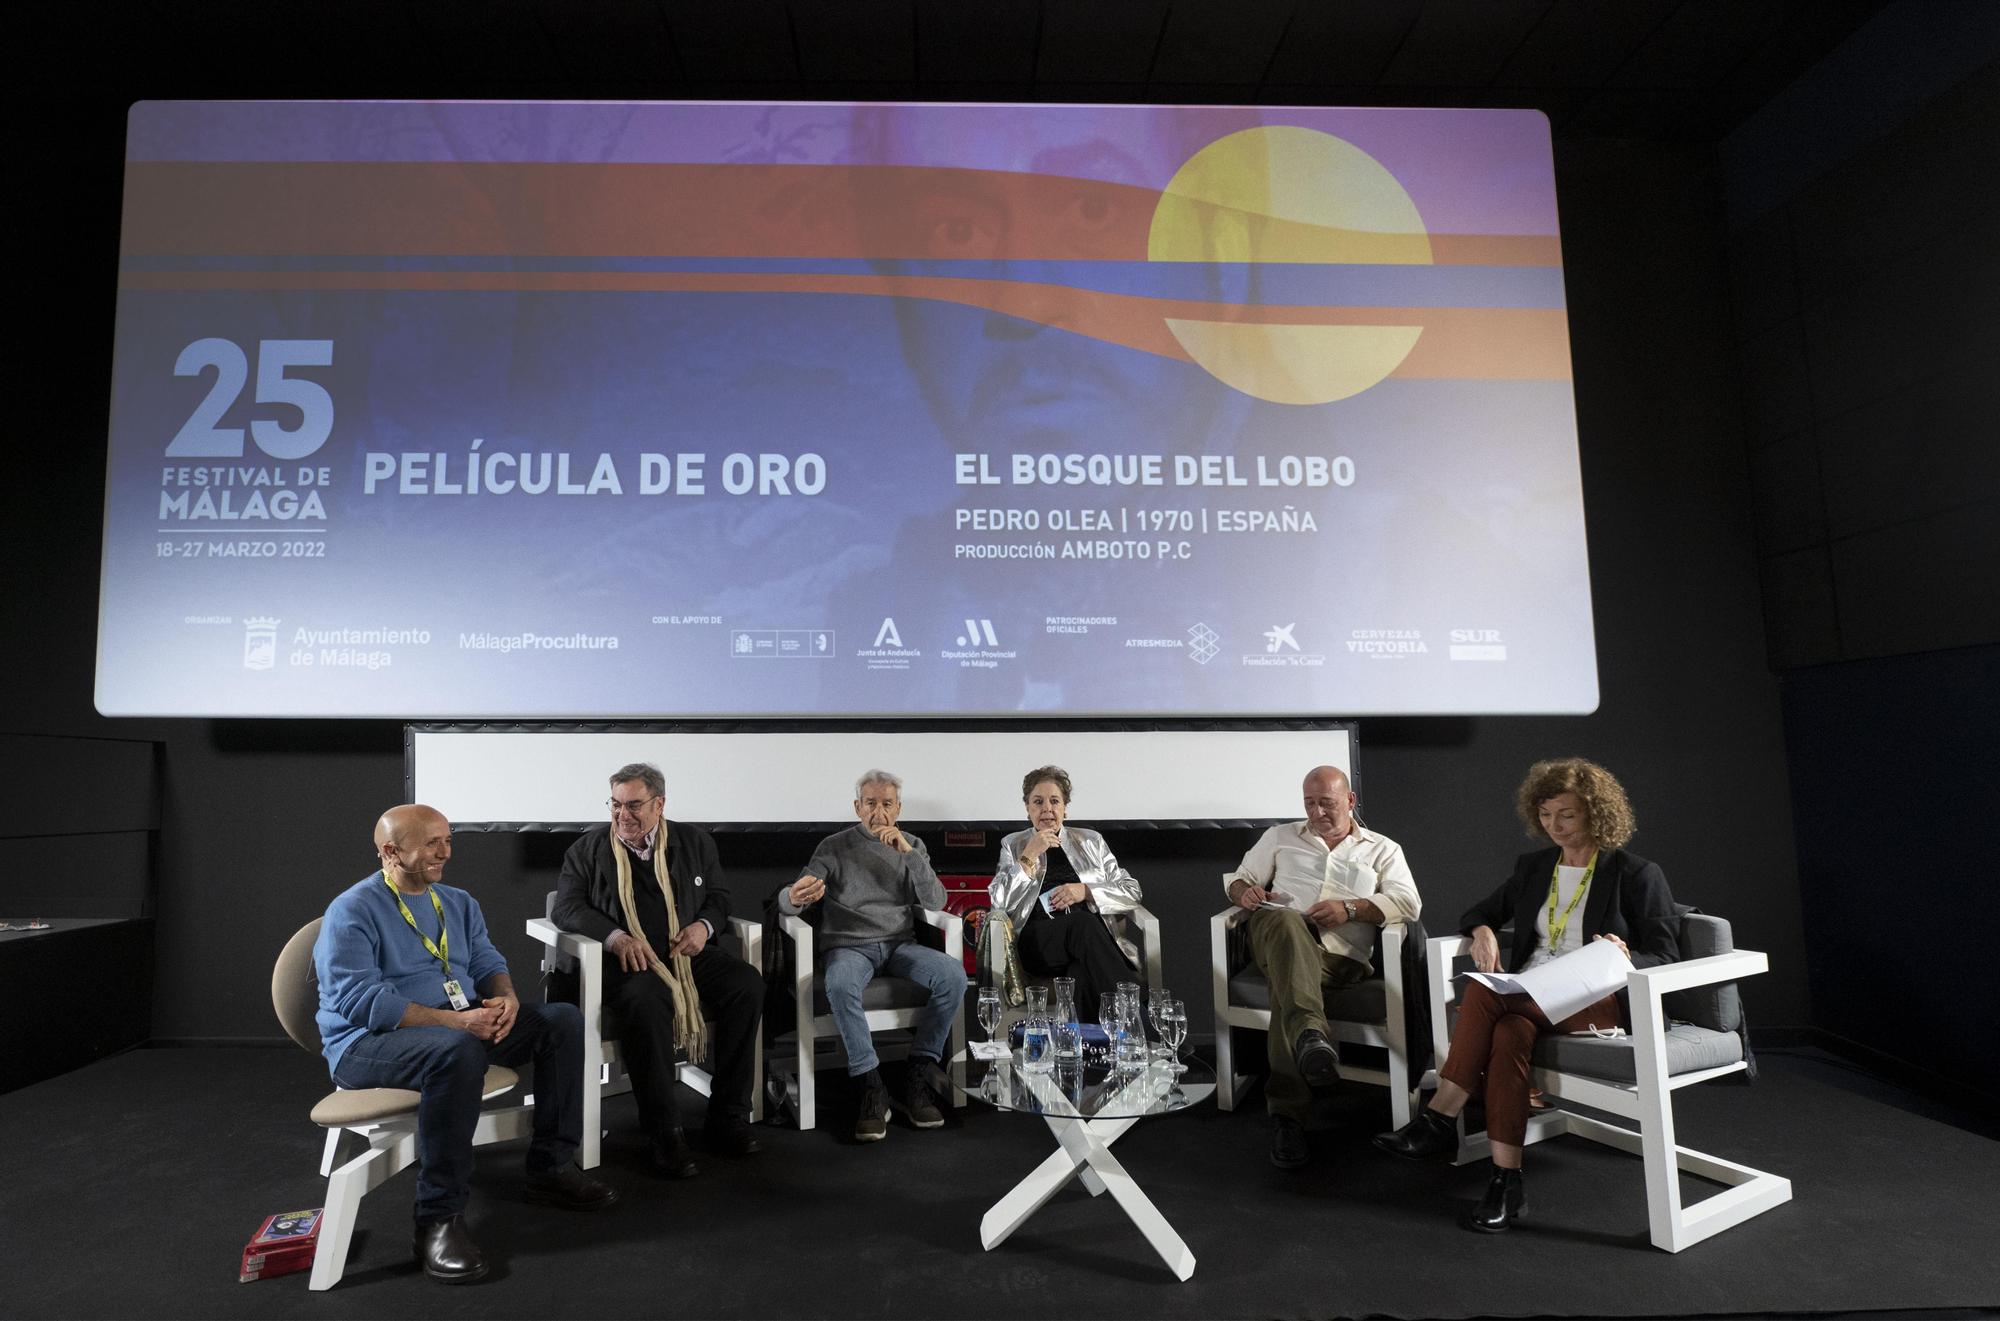 'El bosque del lobo', la Película de Oro del Festival de Málaga